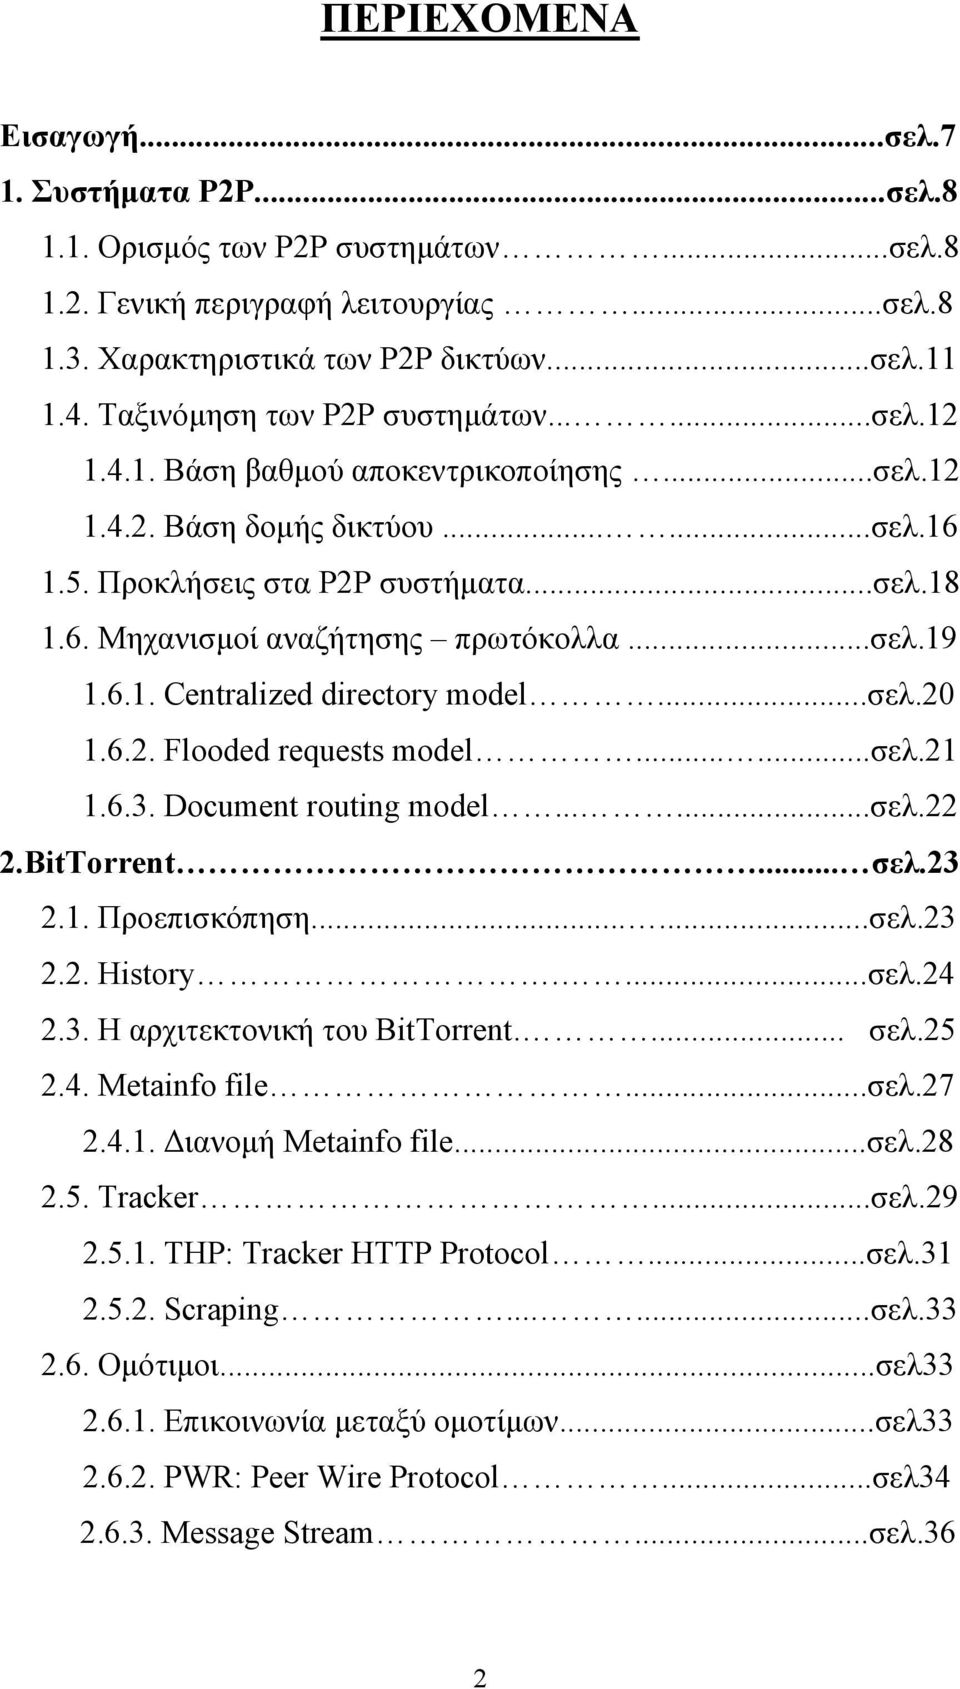 ..σελ.19 1.6.1. Centralized directory model...σελ.20 1.6.2. Flooded requests model......σελ.21 1.6.3. Document routing model......σελ.22 2.BitTorrent... σελ.23 2.1. Προεπισκόπηση......σελ.23 2.2. History.